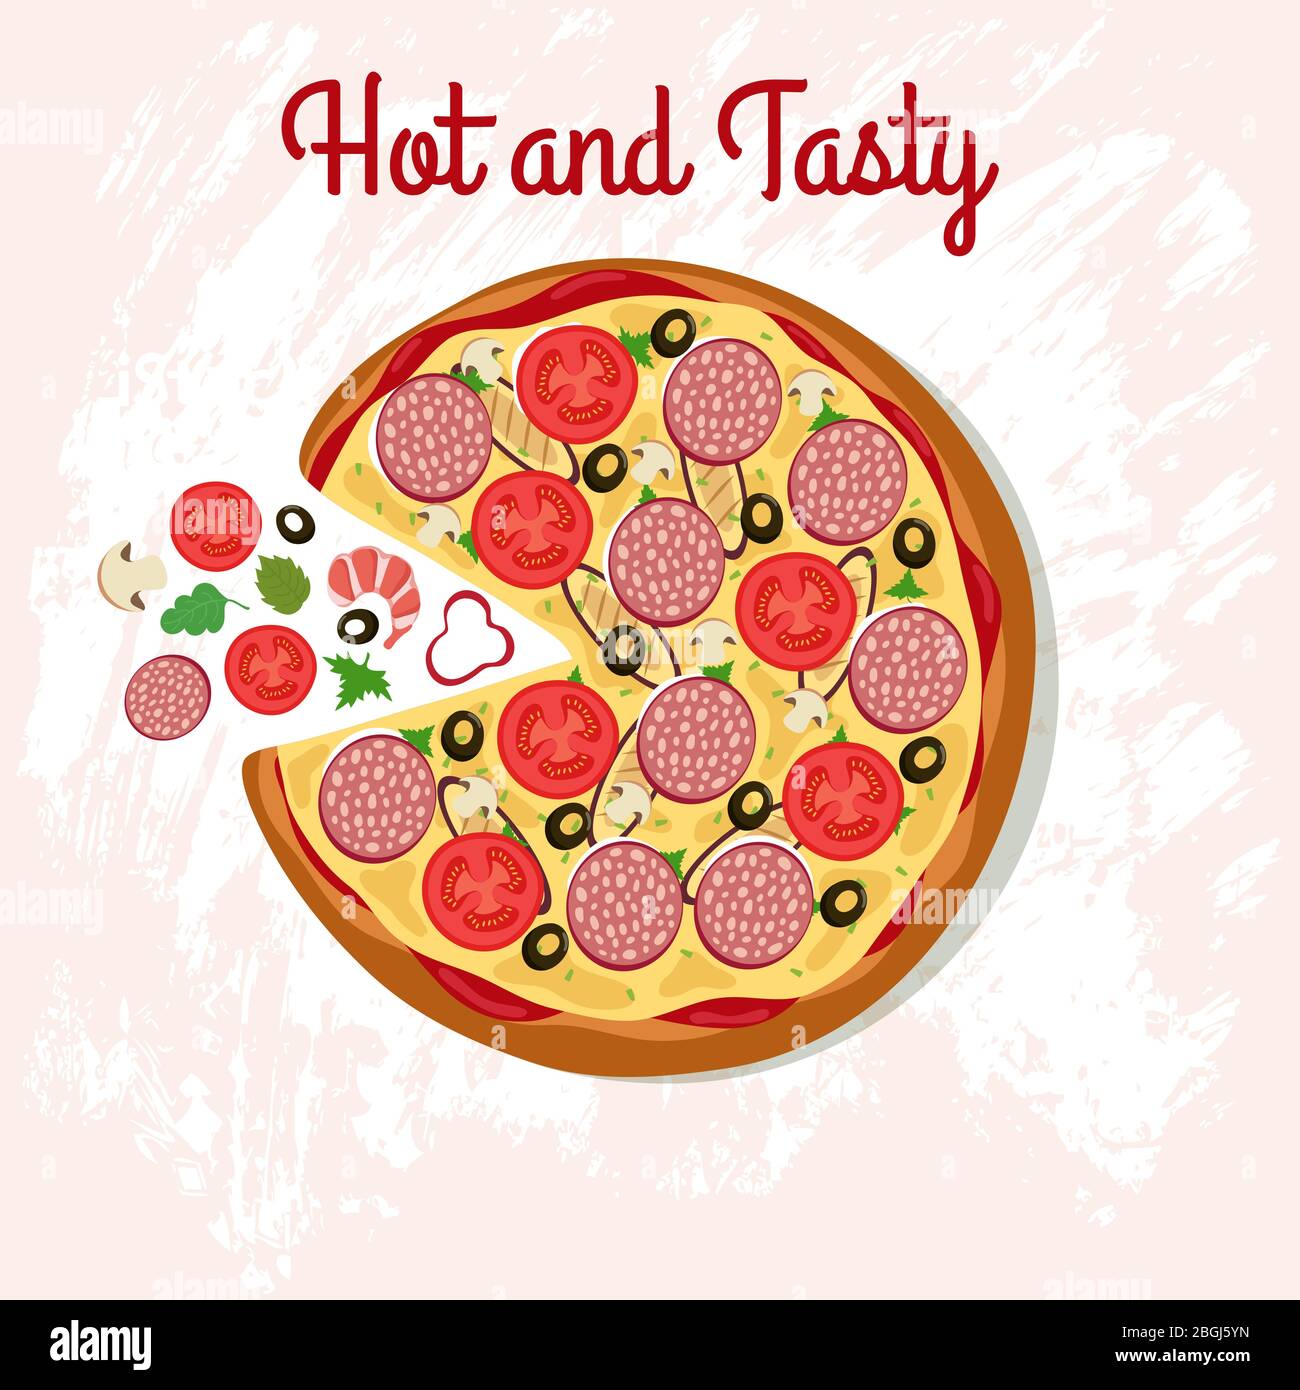 Deliziosa pizza al tavolo con ingredienti per pizza. Poster vettoriale cucina italiana. Illustrazione di fast food caldo e gustoso Illustrazione Vettoriale